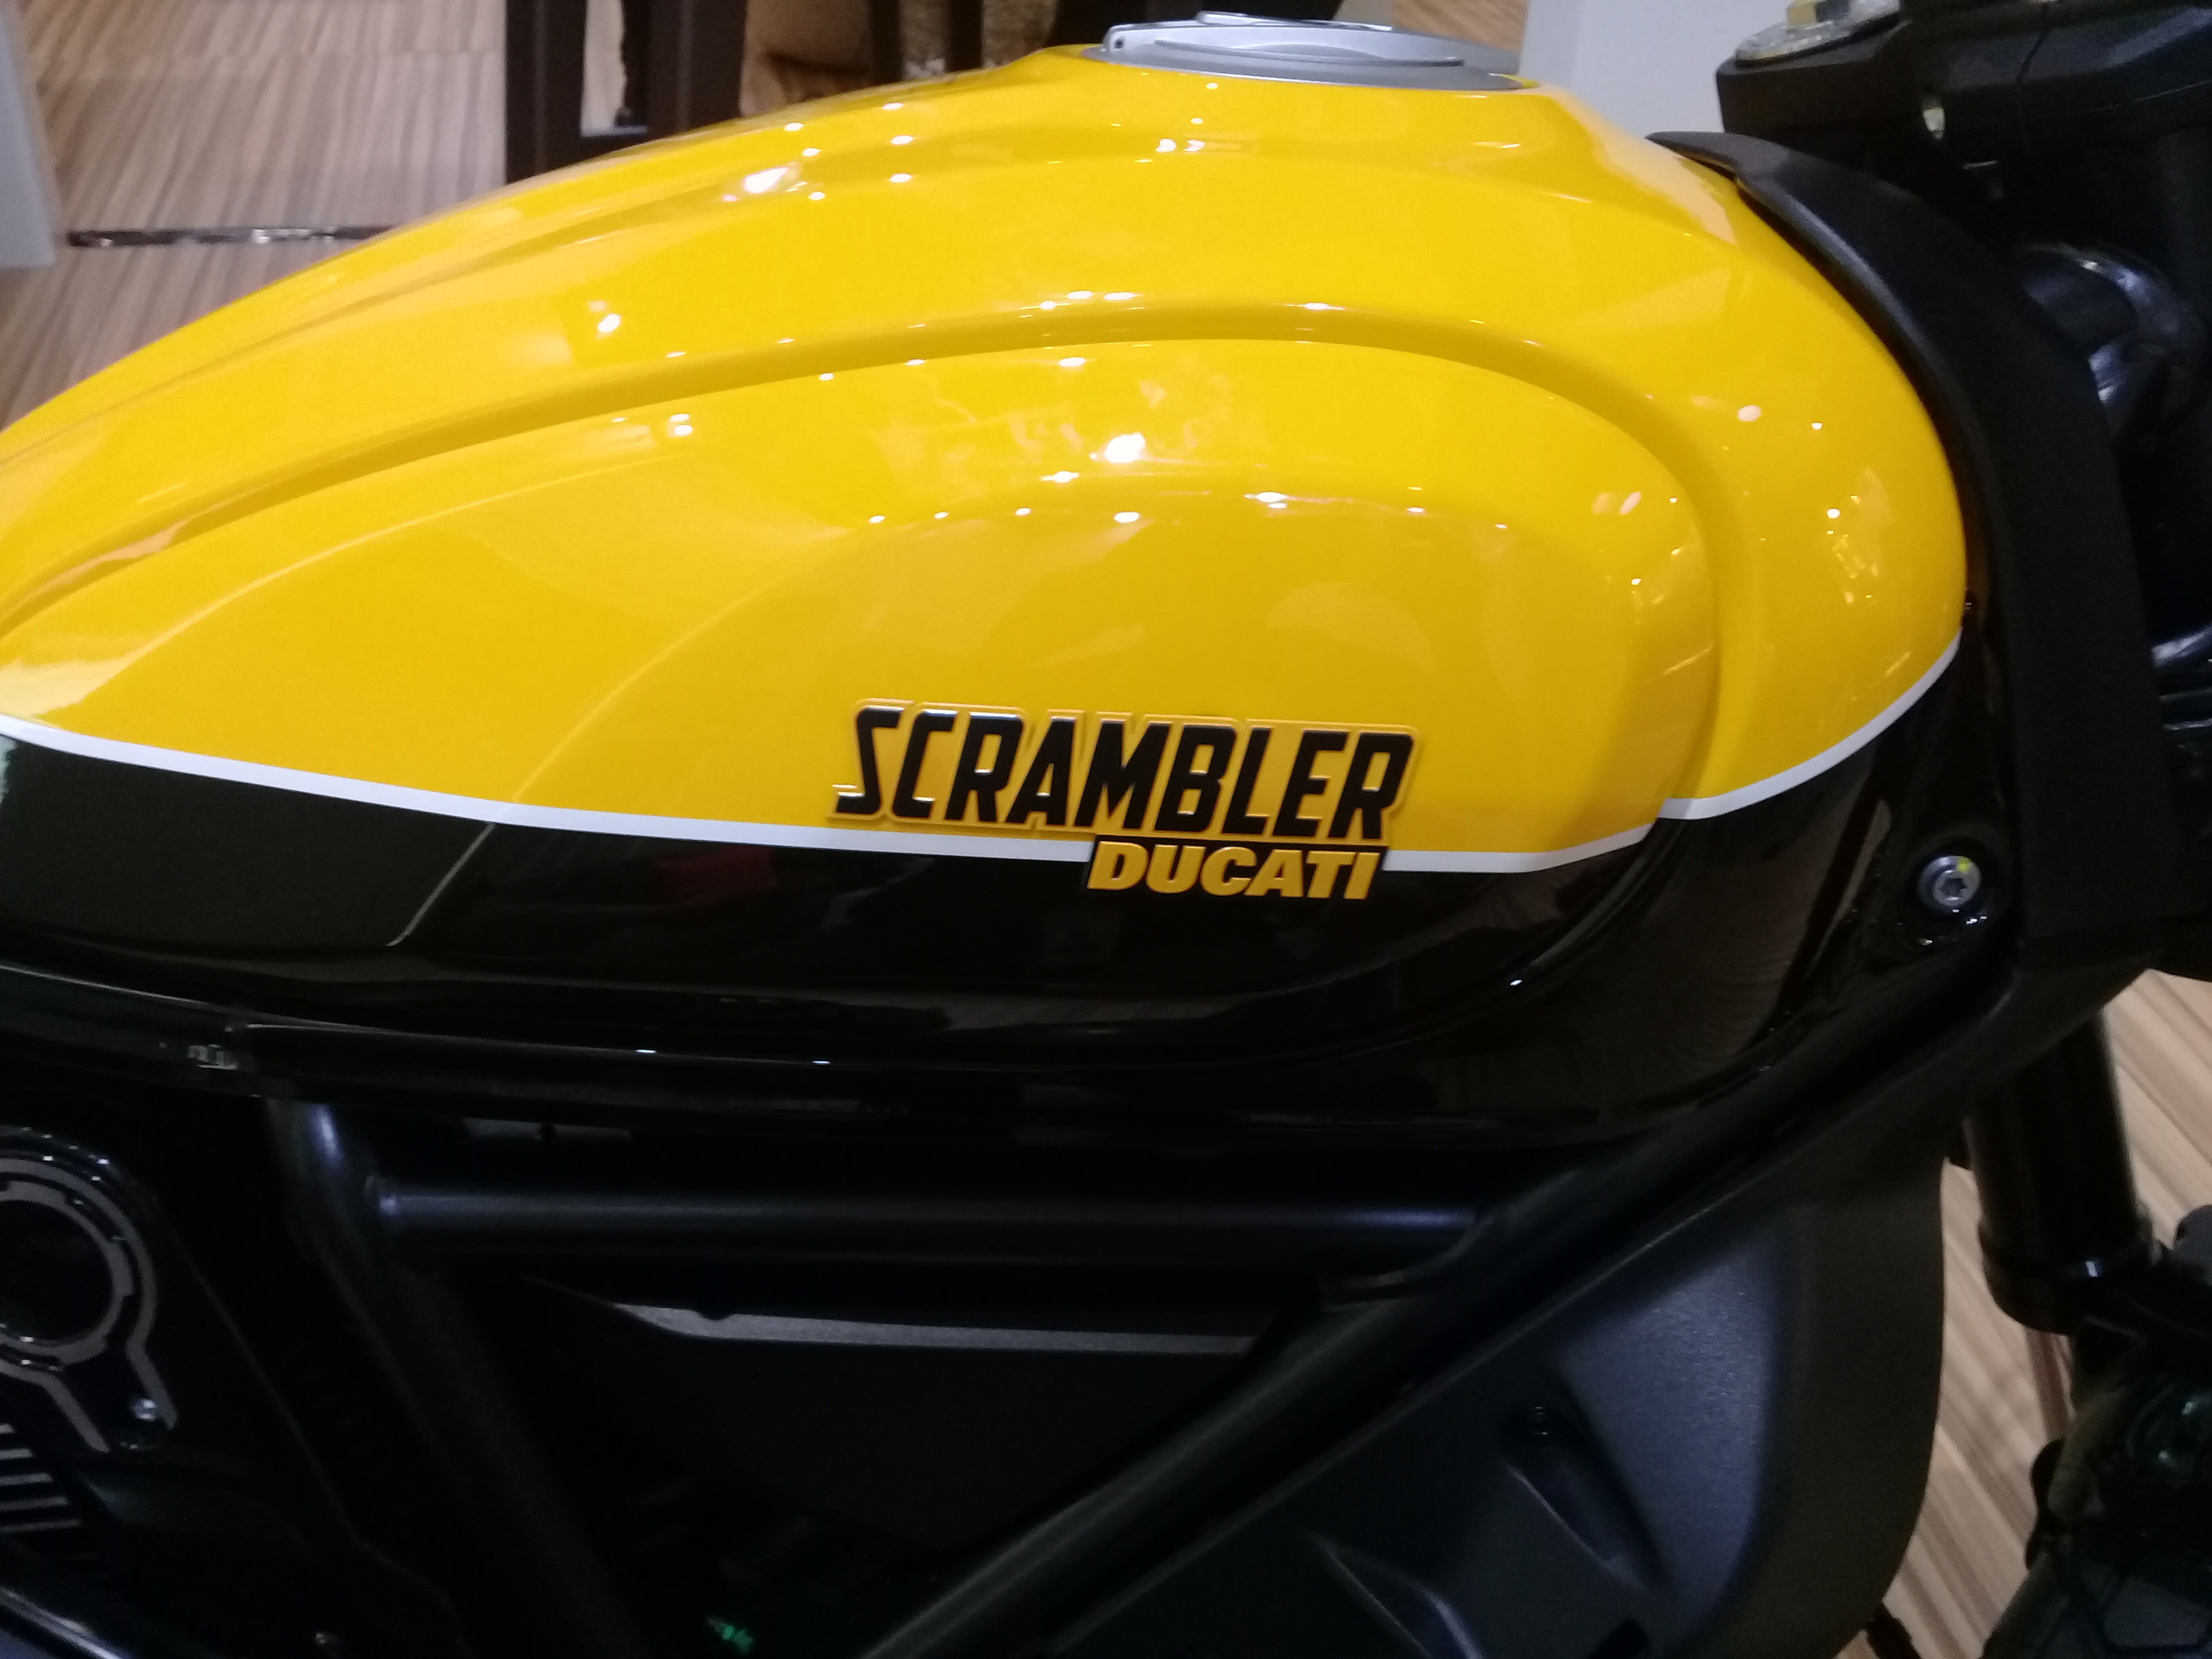 Scrambler Ducati, Info 085773713808